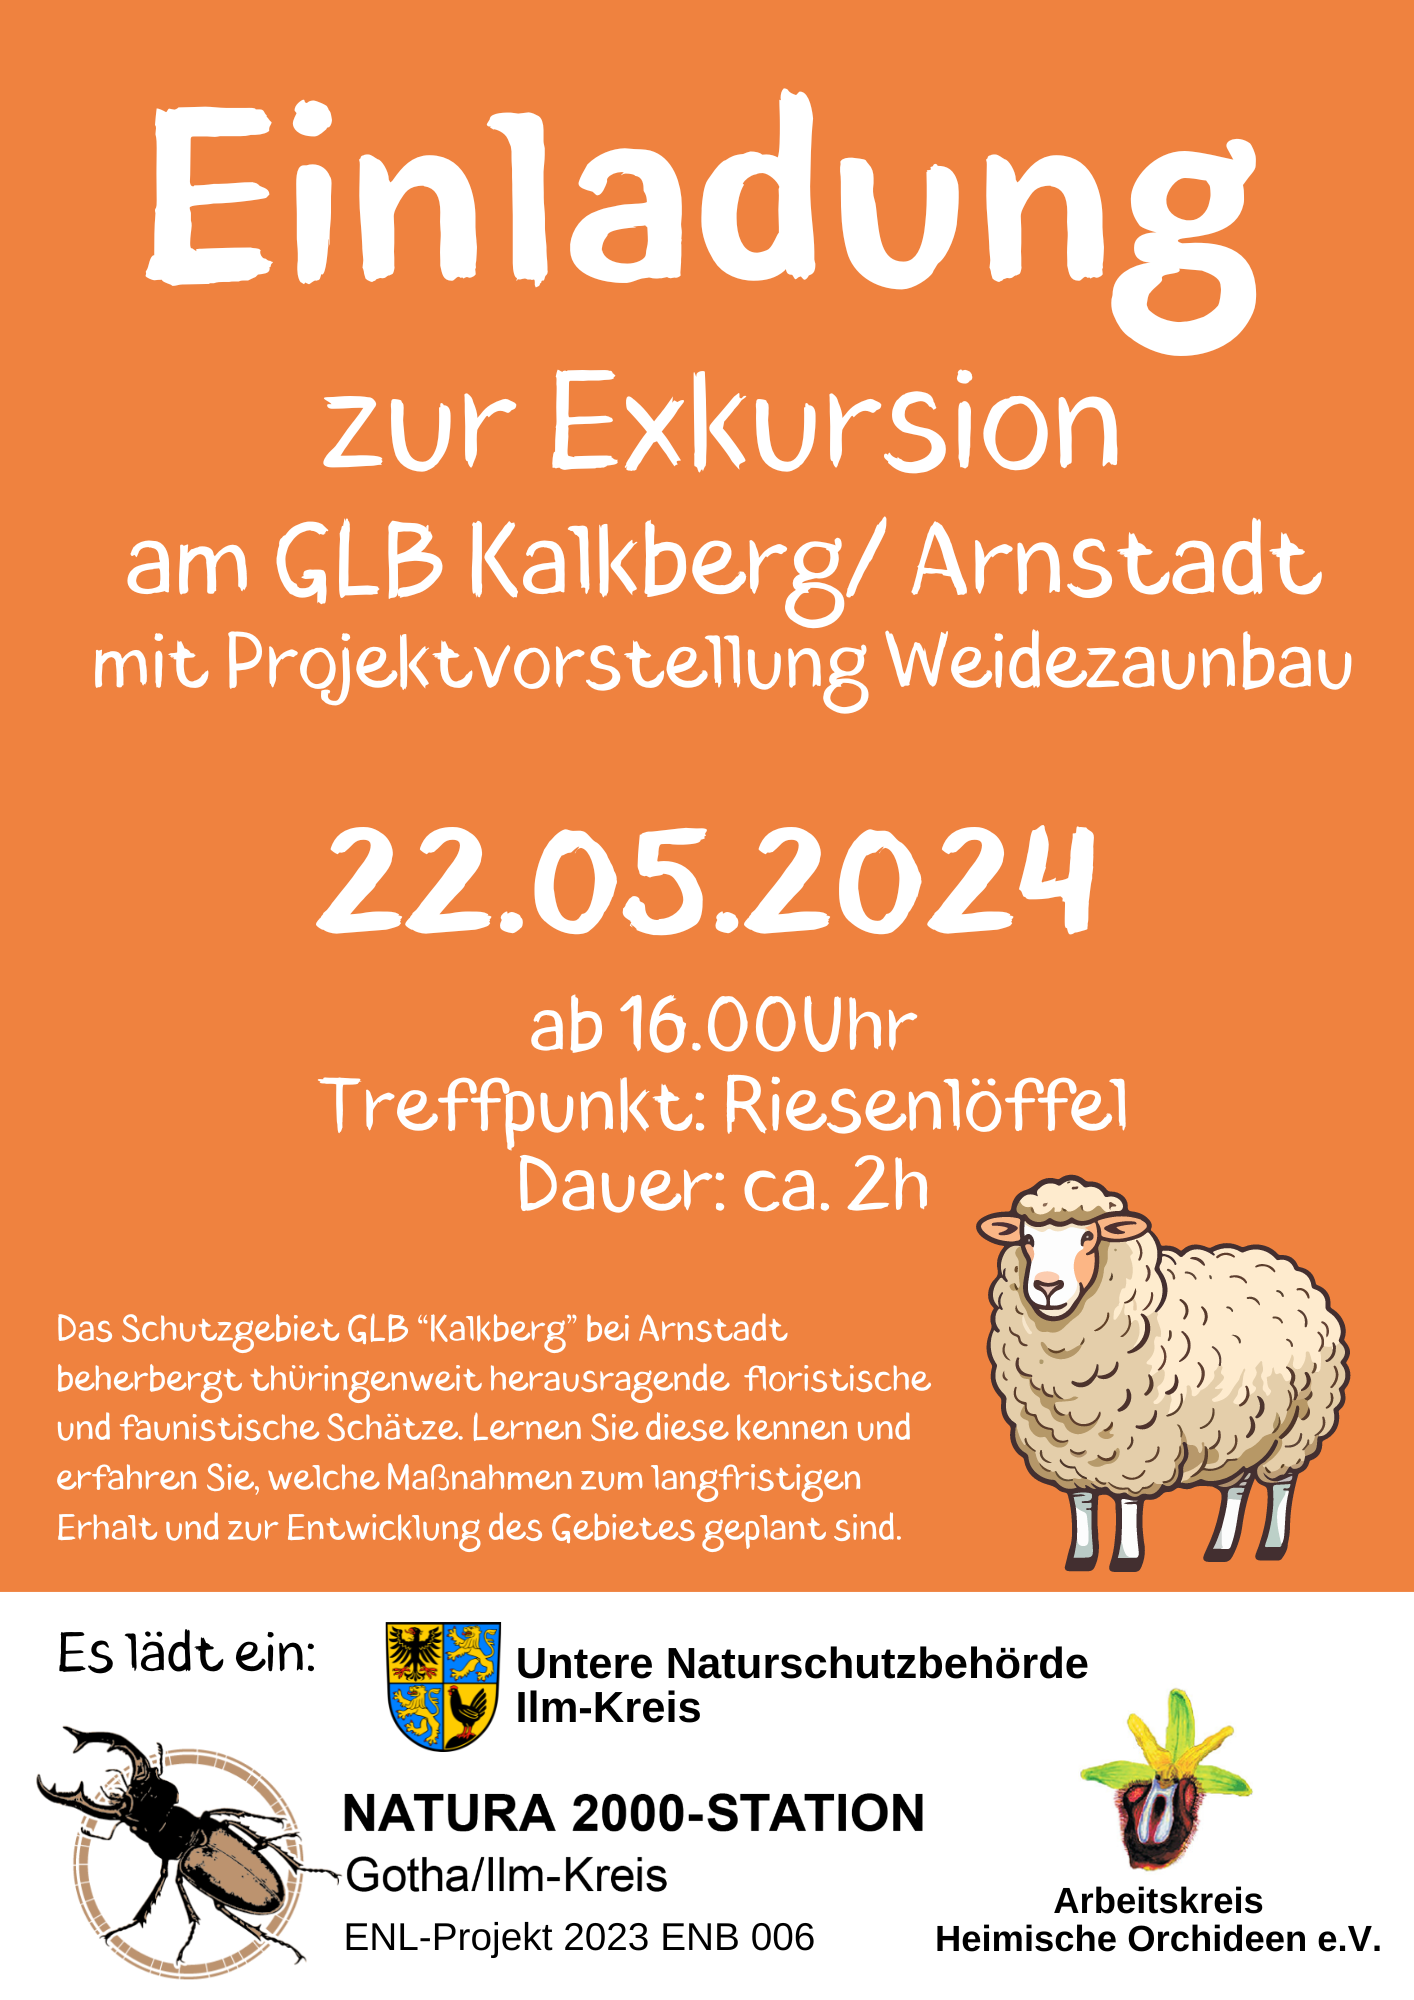 Einladung zur Exkursion GLB Kalkberg am 22.05.2024 